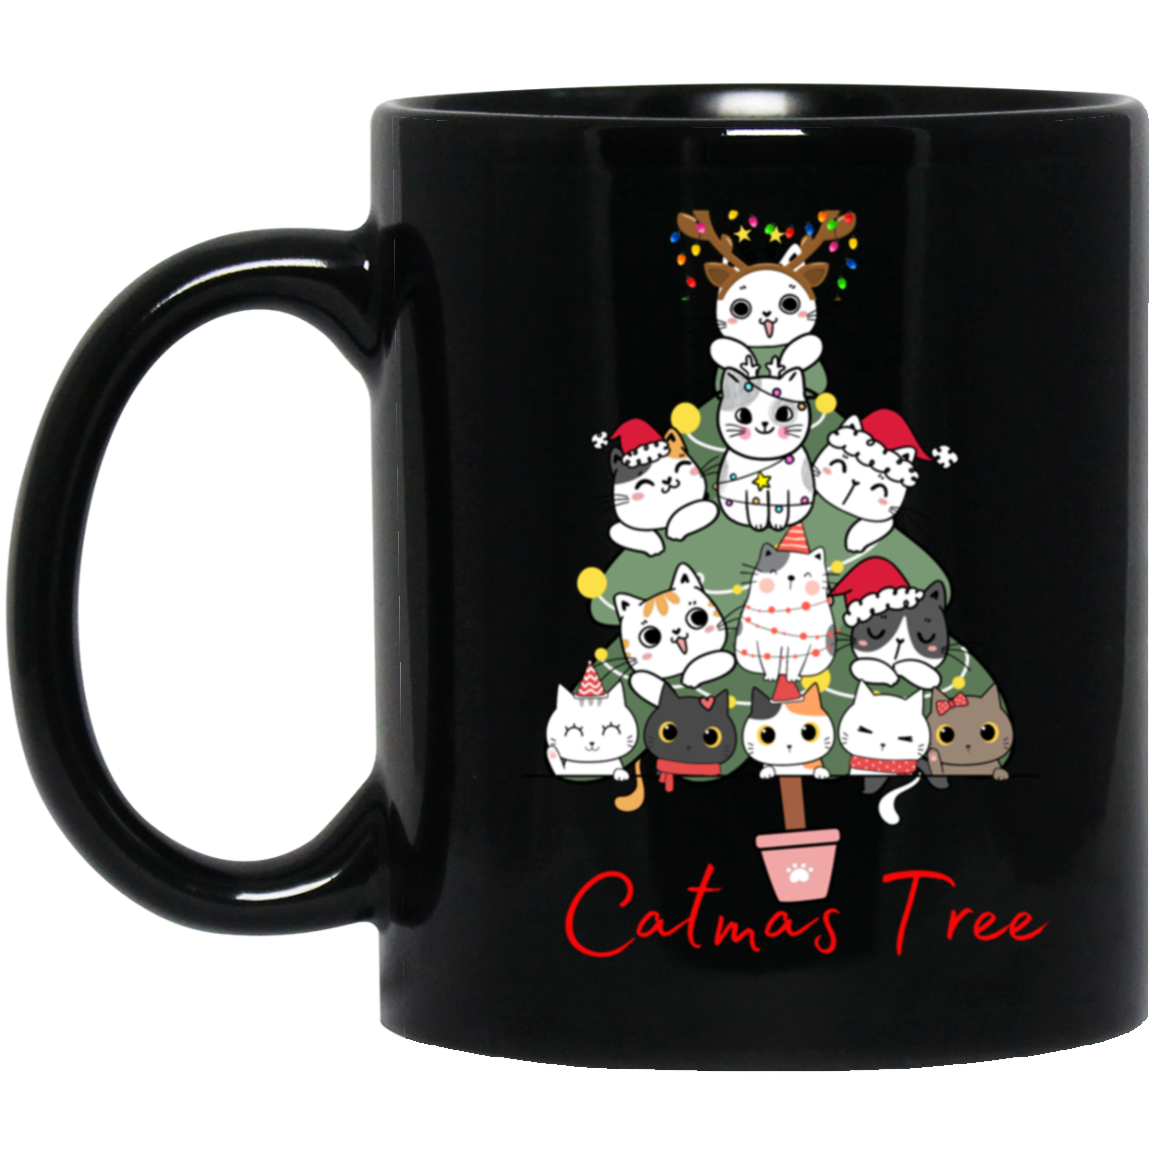 CatMas Tree for Crazy Cat Lady 11 oz. Black Mug